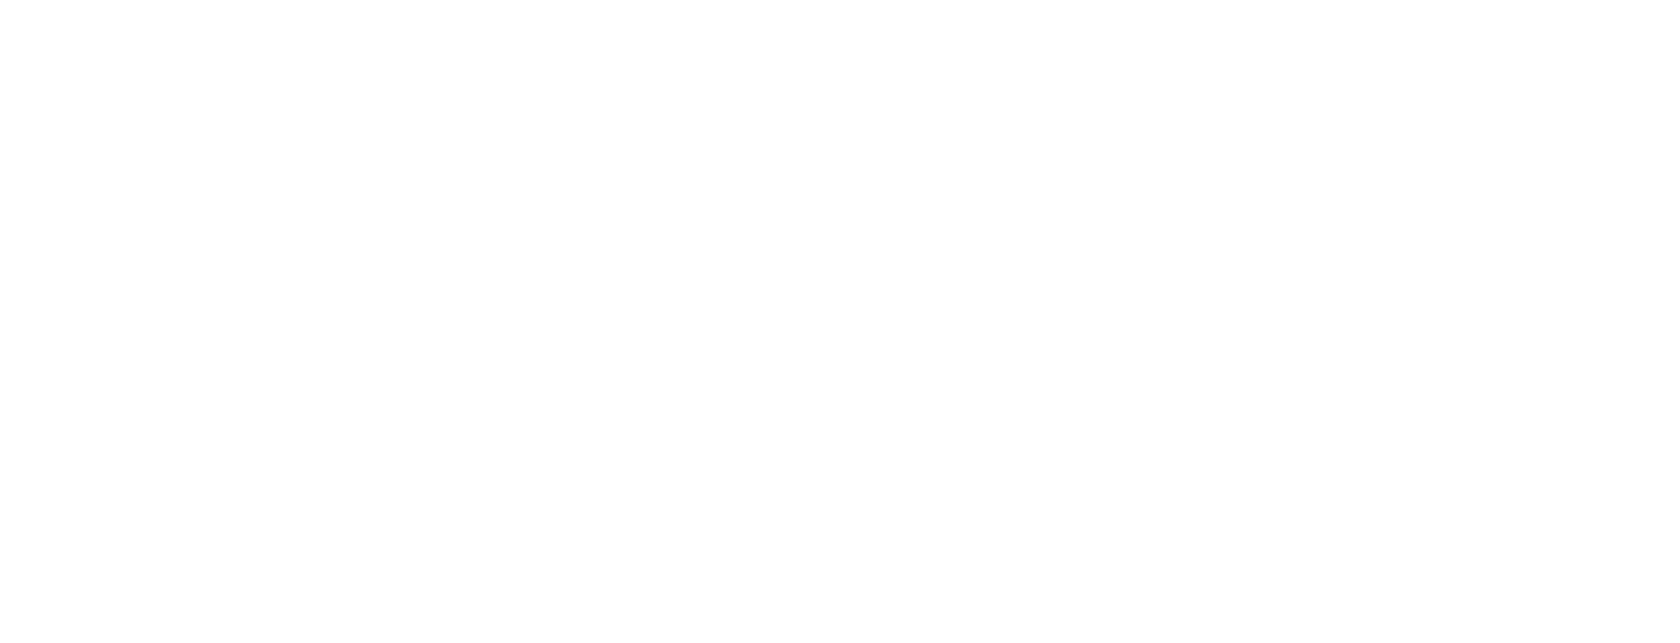 Торцевая заглушка Flexy TOREC LINE 15 для профилей Flexy: размер, вид, применение, способ монтажа в Беларуси (РБ)